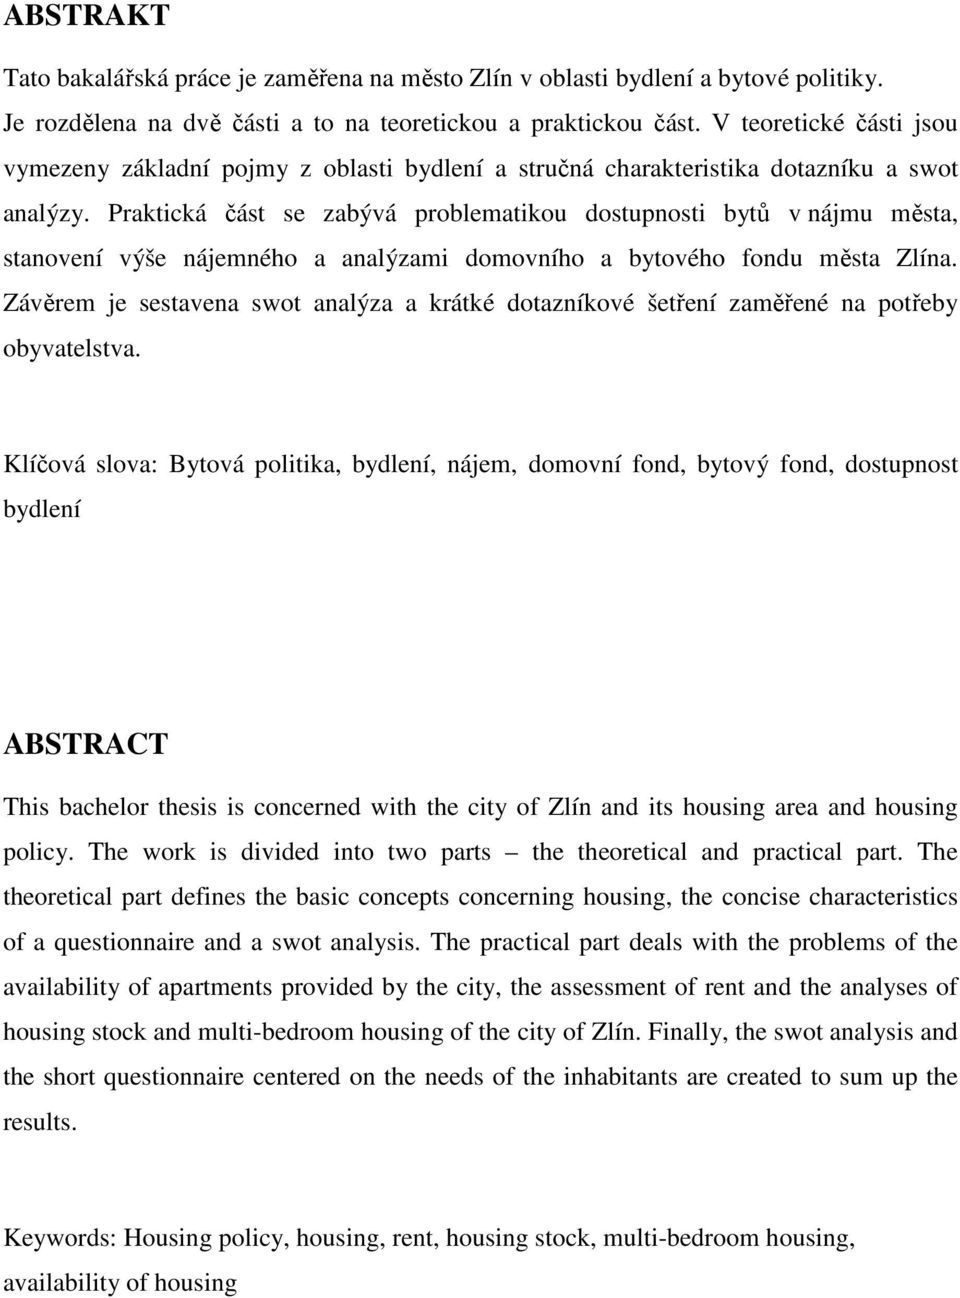 Praktická část se zabývá problematikou dostupnosti bytů v nájmu města, stanovení výše nájemného a analýzami domovního a bytového fondu města Zlína.